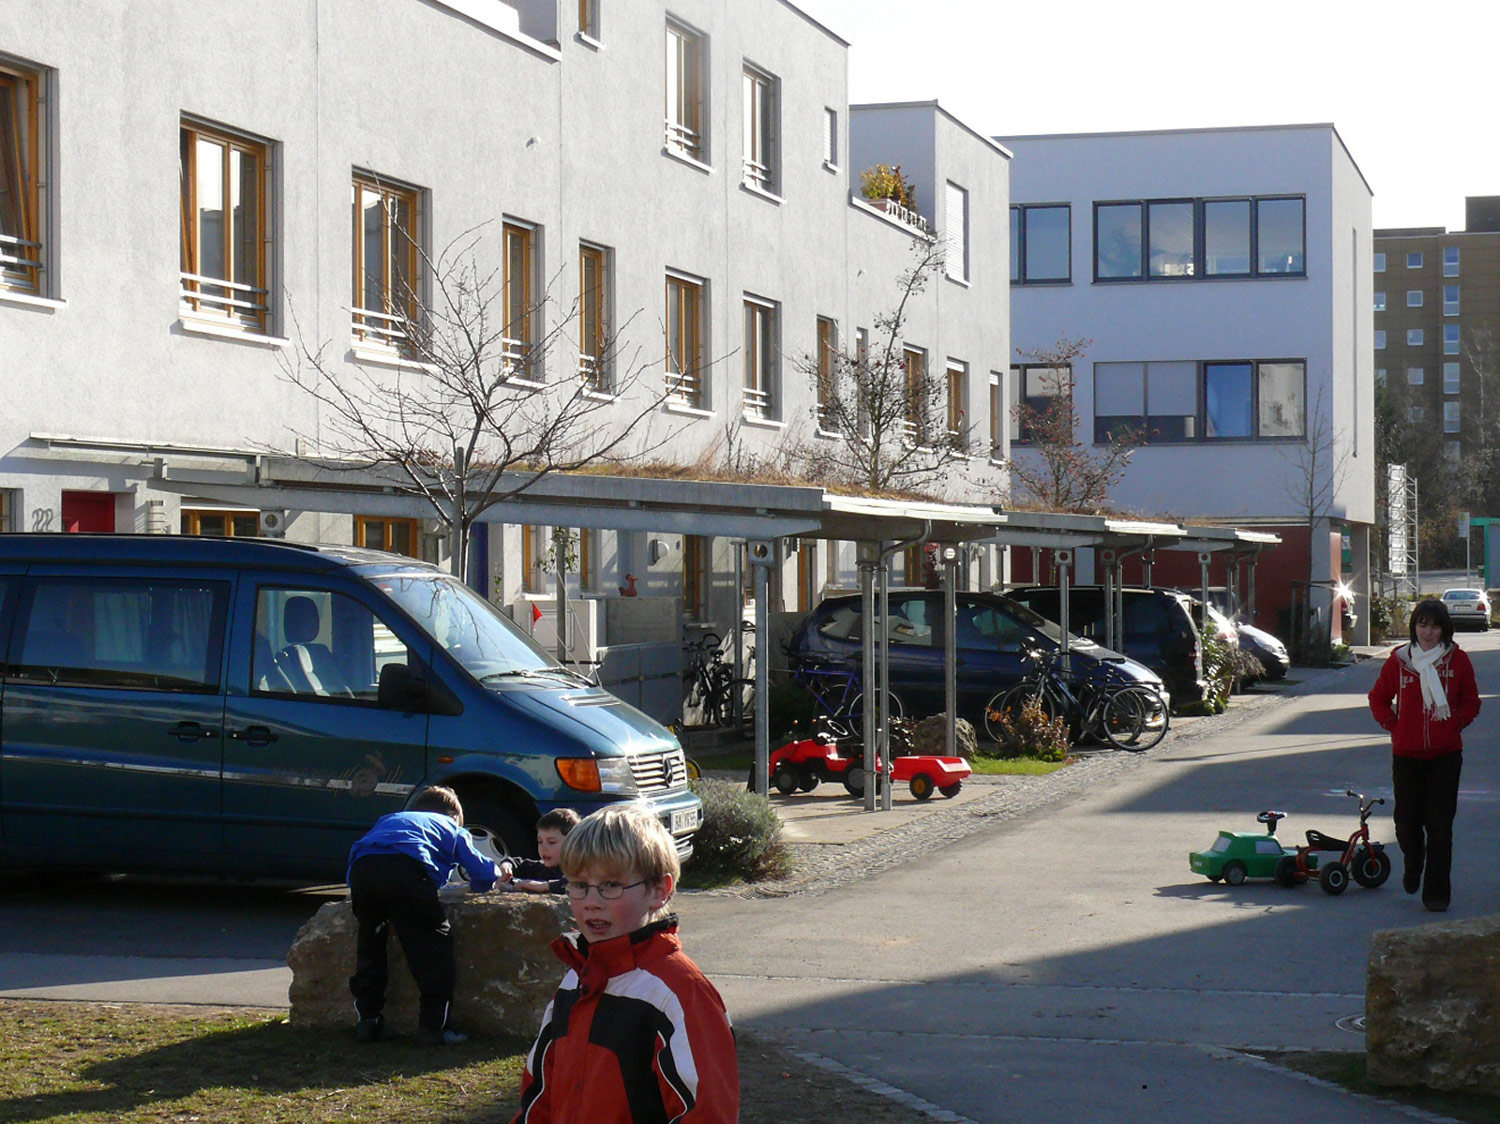 Beispiel Maria-Ward-Straße in Bamberg : Wo spielen die Kinder?